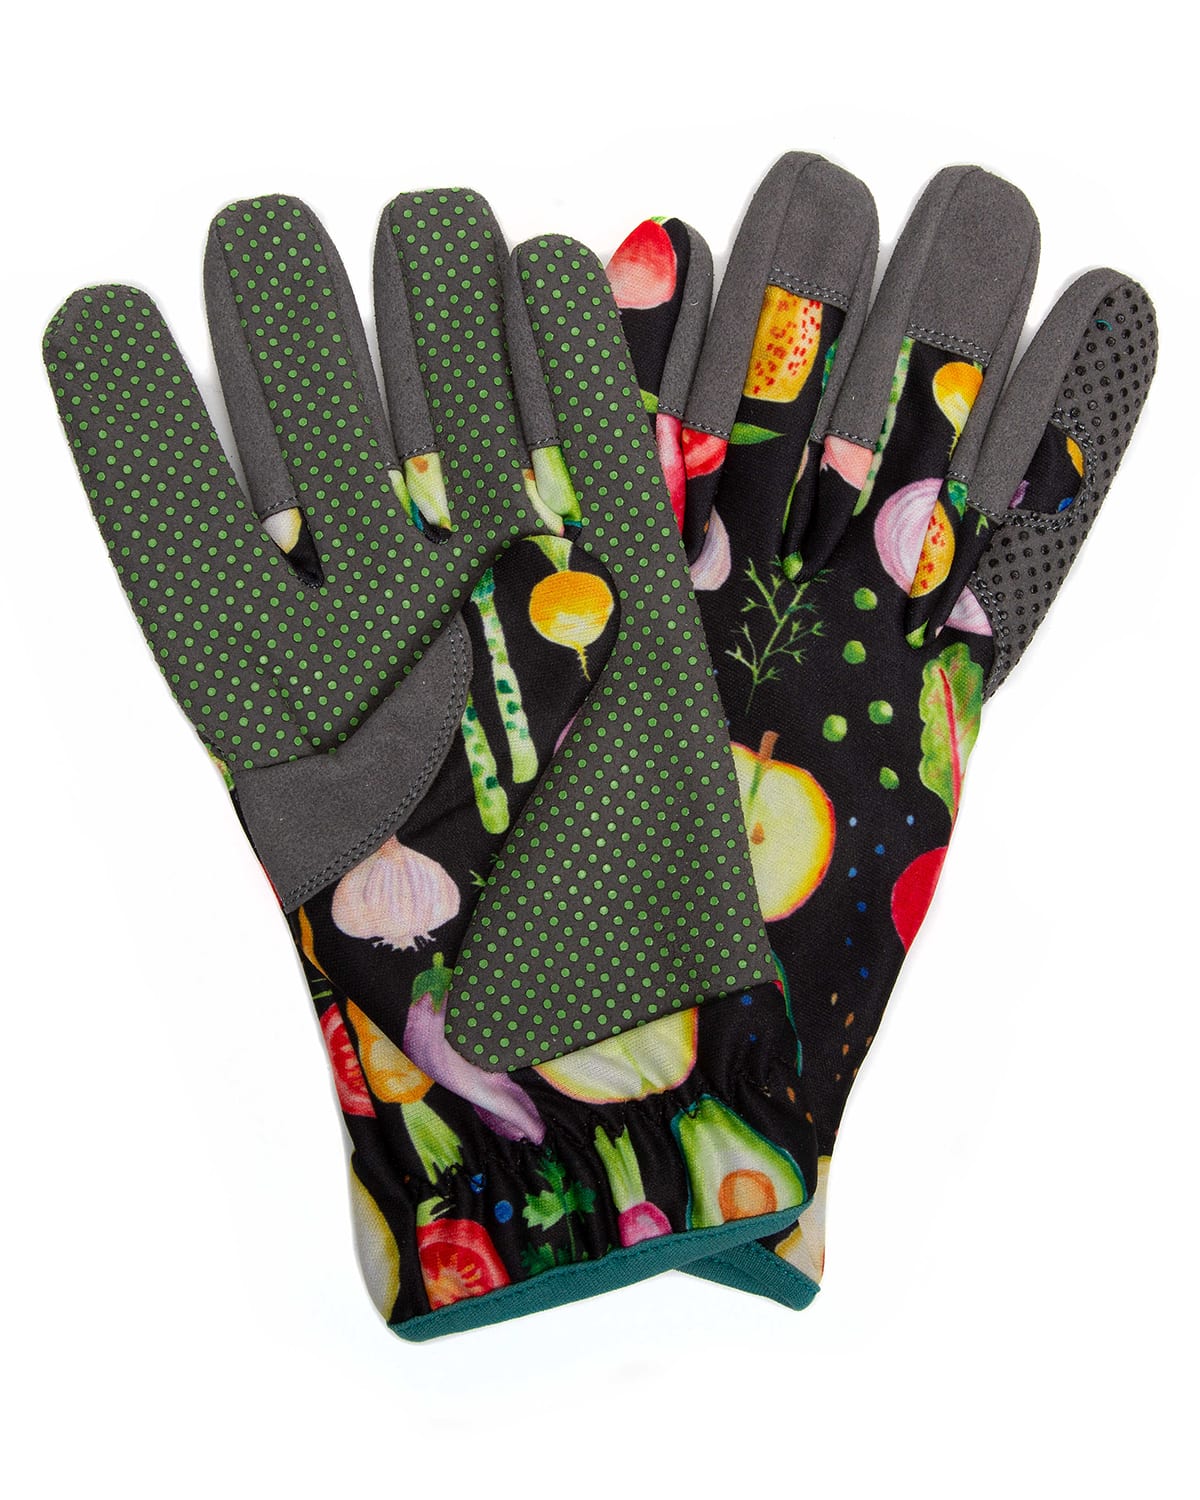 Radish & Root Garden Gloves - Medium